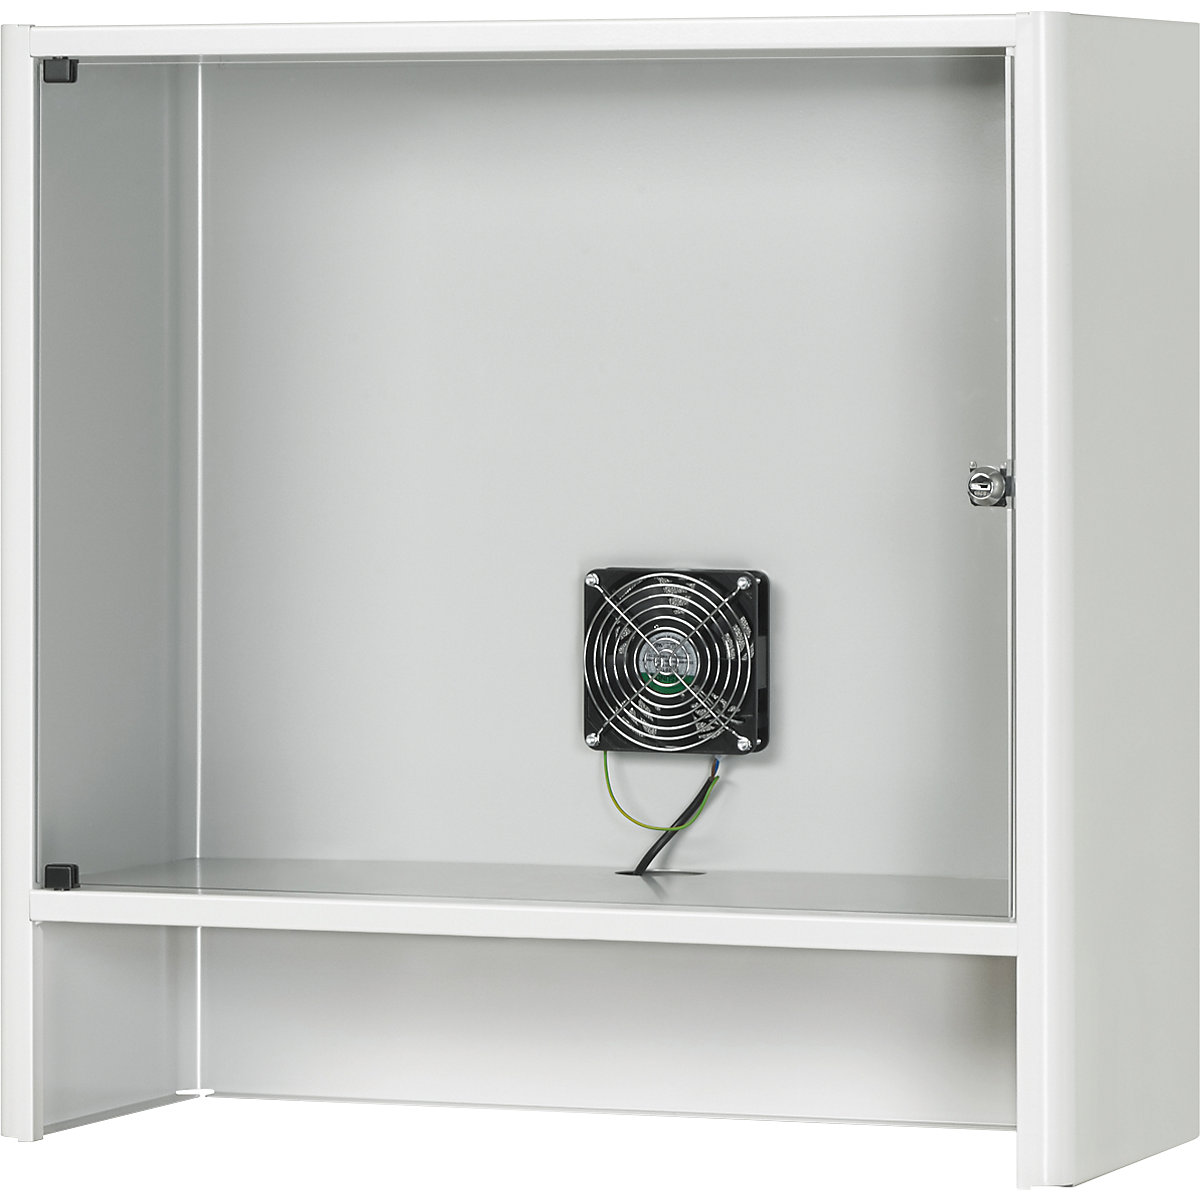 Compartimento para monitor con ventilación activa integrada – RAU, H x A x P 710 x 720 x 300 mm, gris luminoso RAL 7035-3